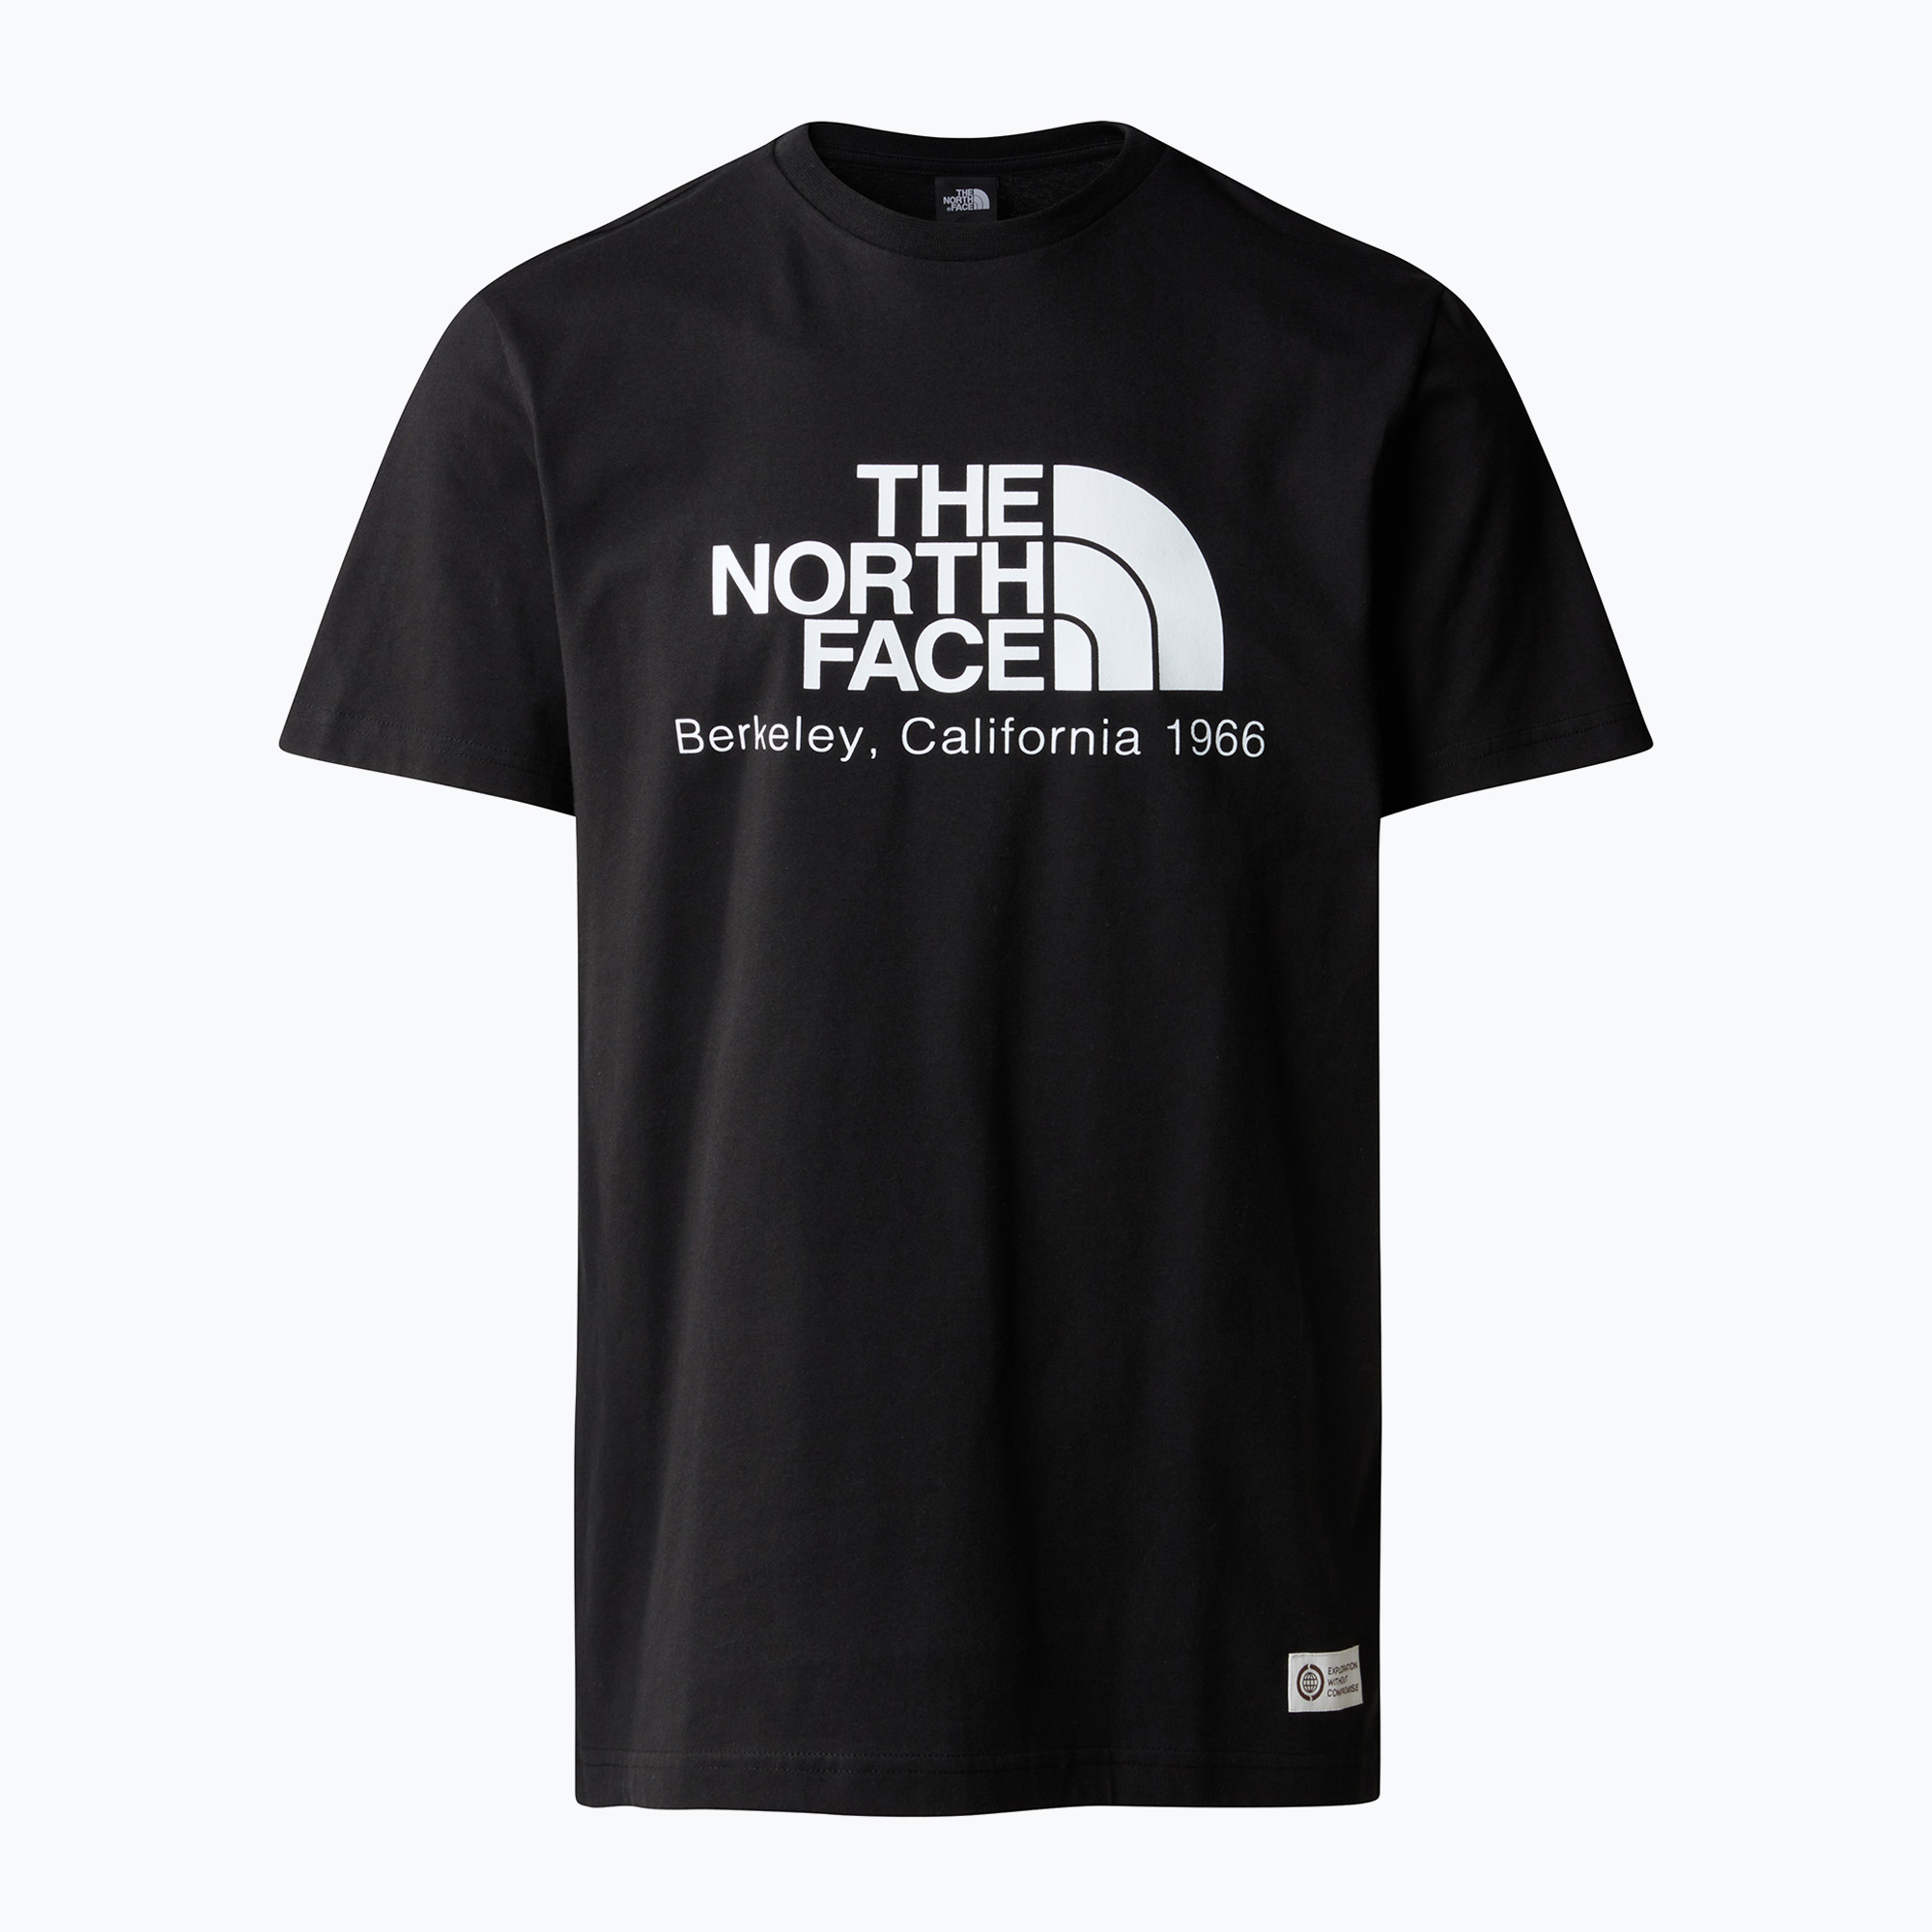 The North Face Berkeley California черна мъжка тениска